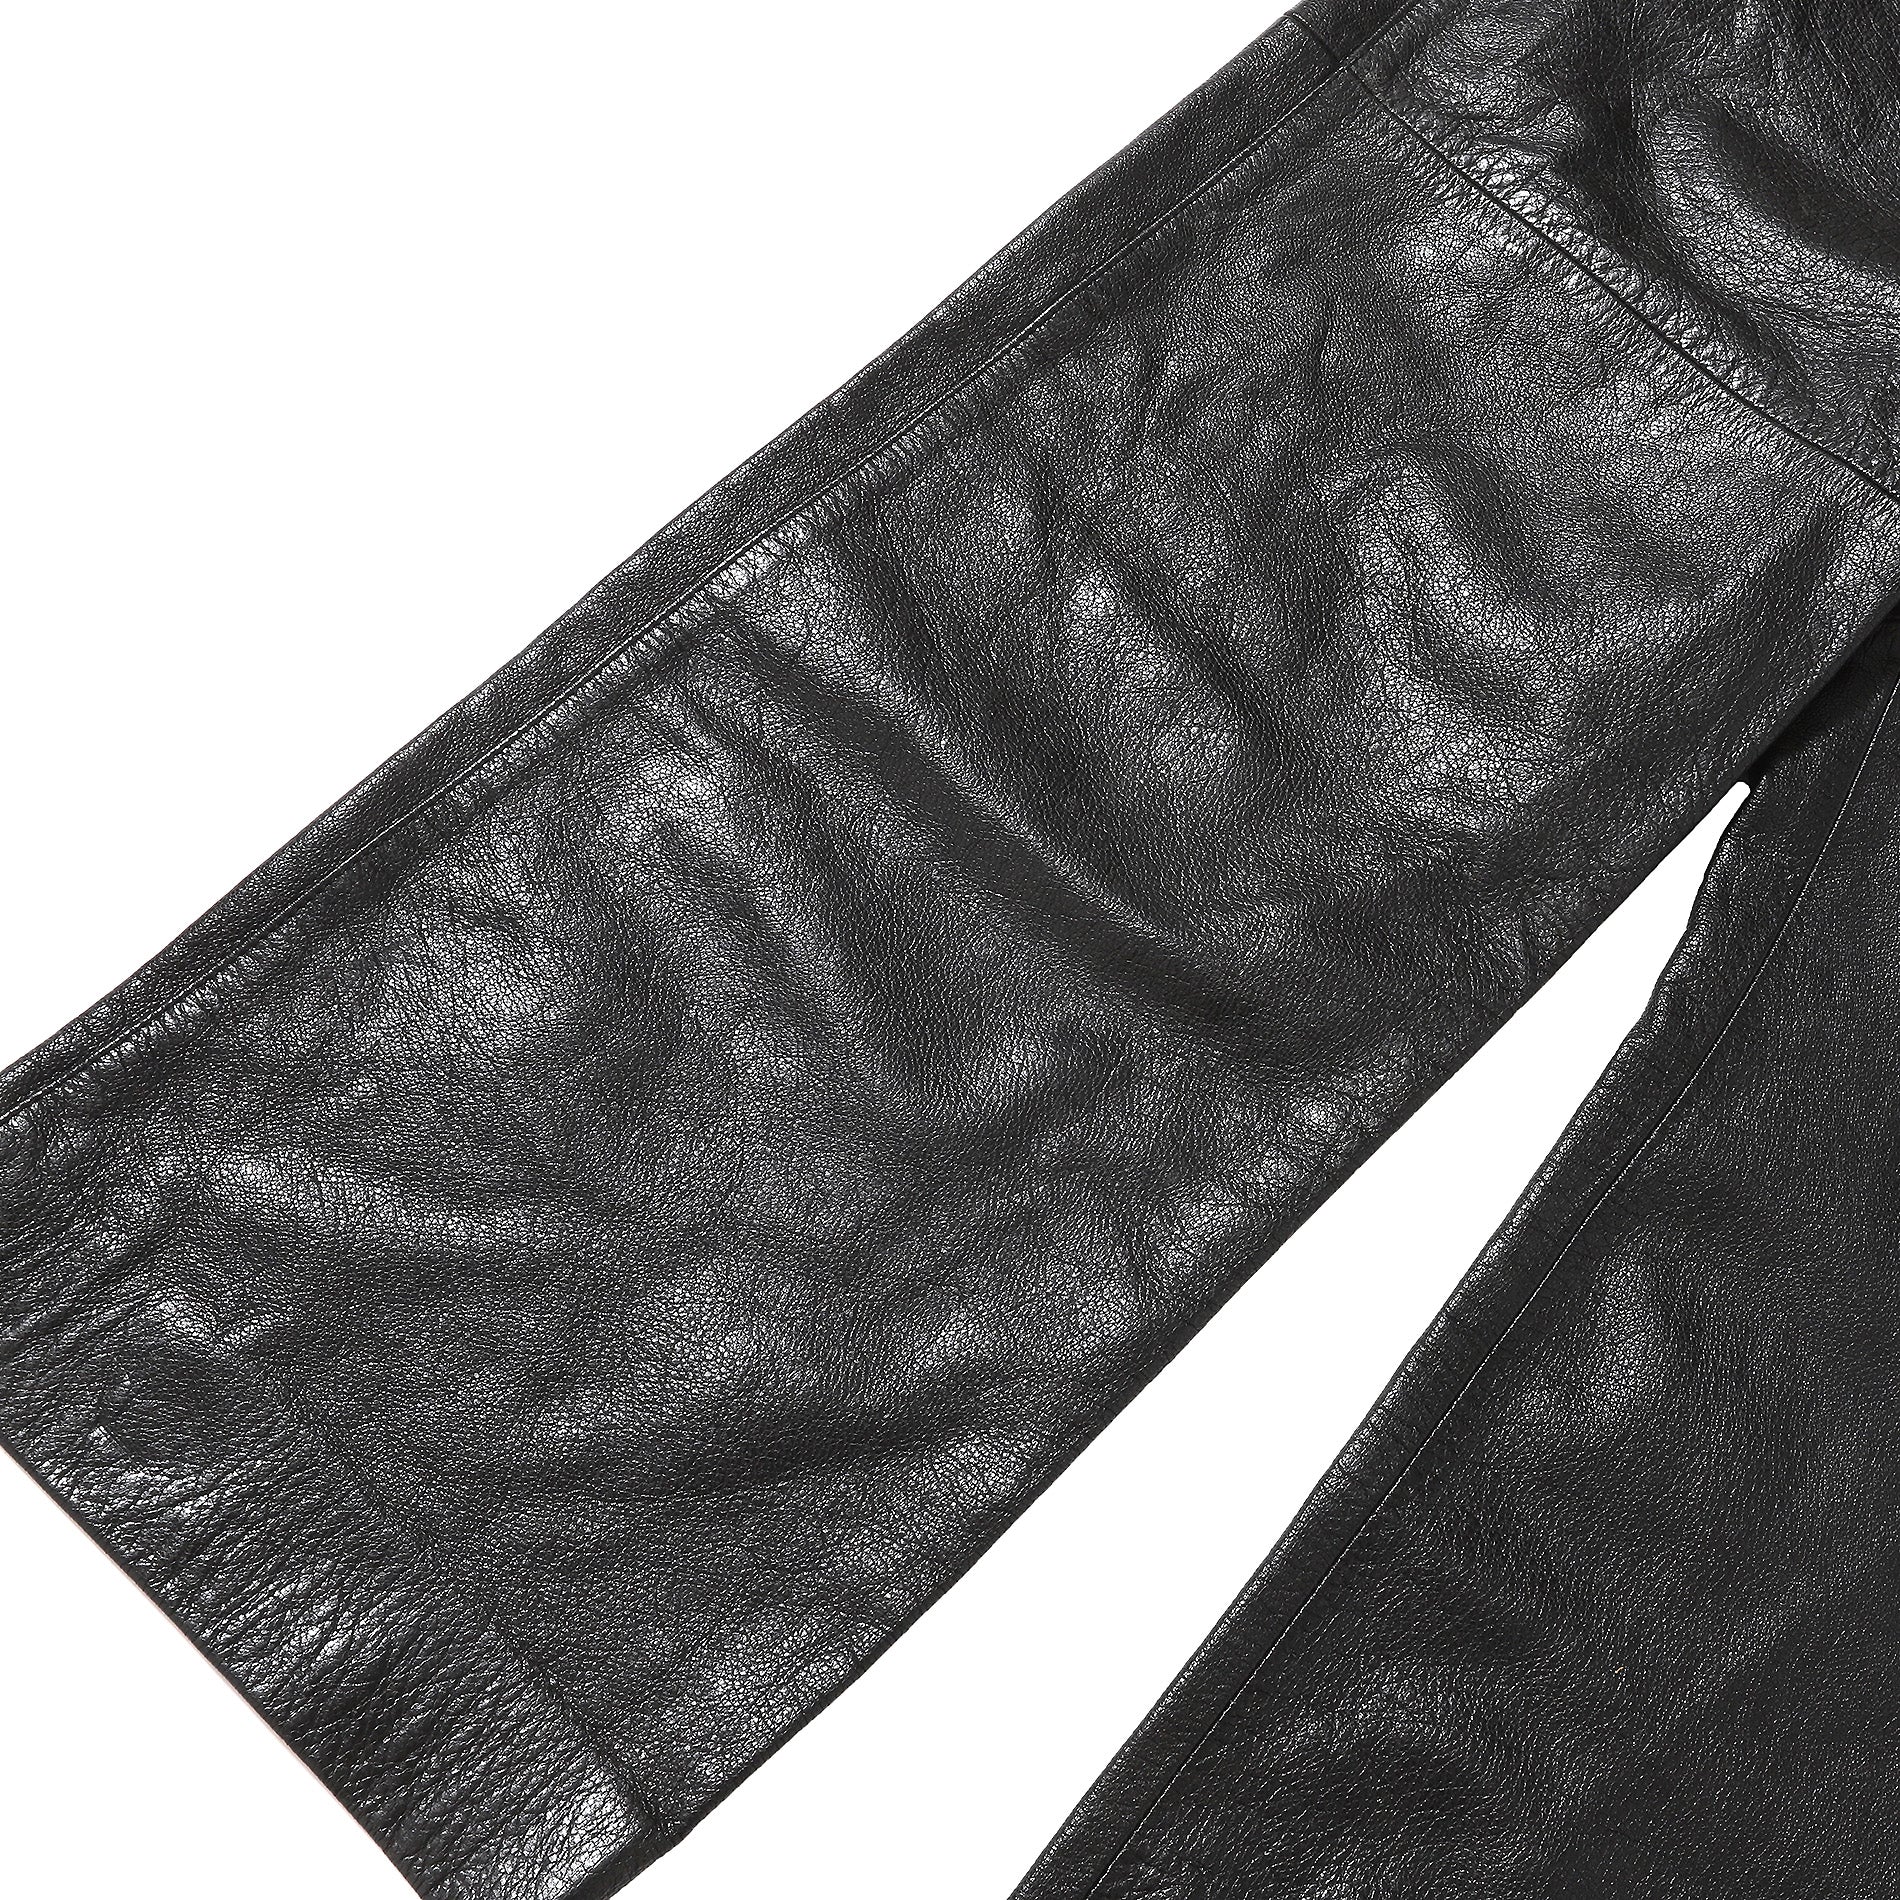 Maison Martin Margiela AW04 Oversized Leather Pants - Ākaibu Store